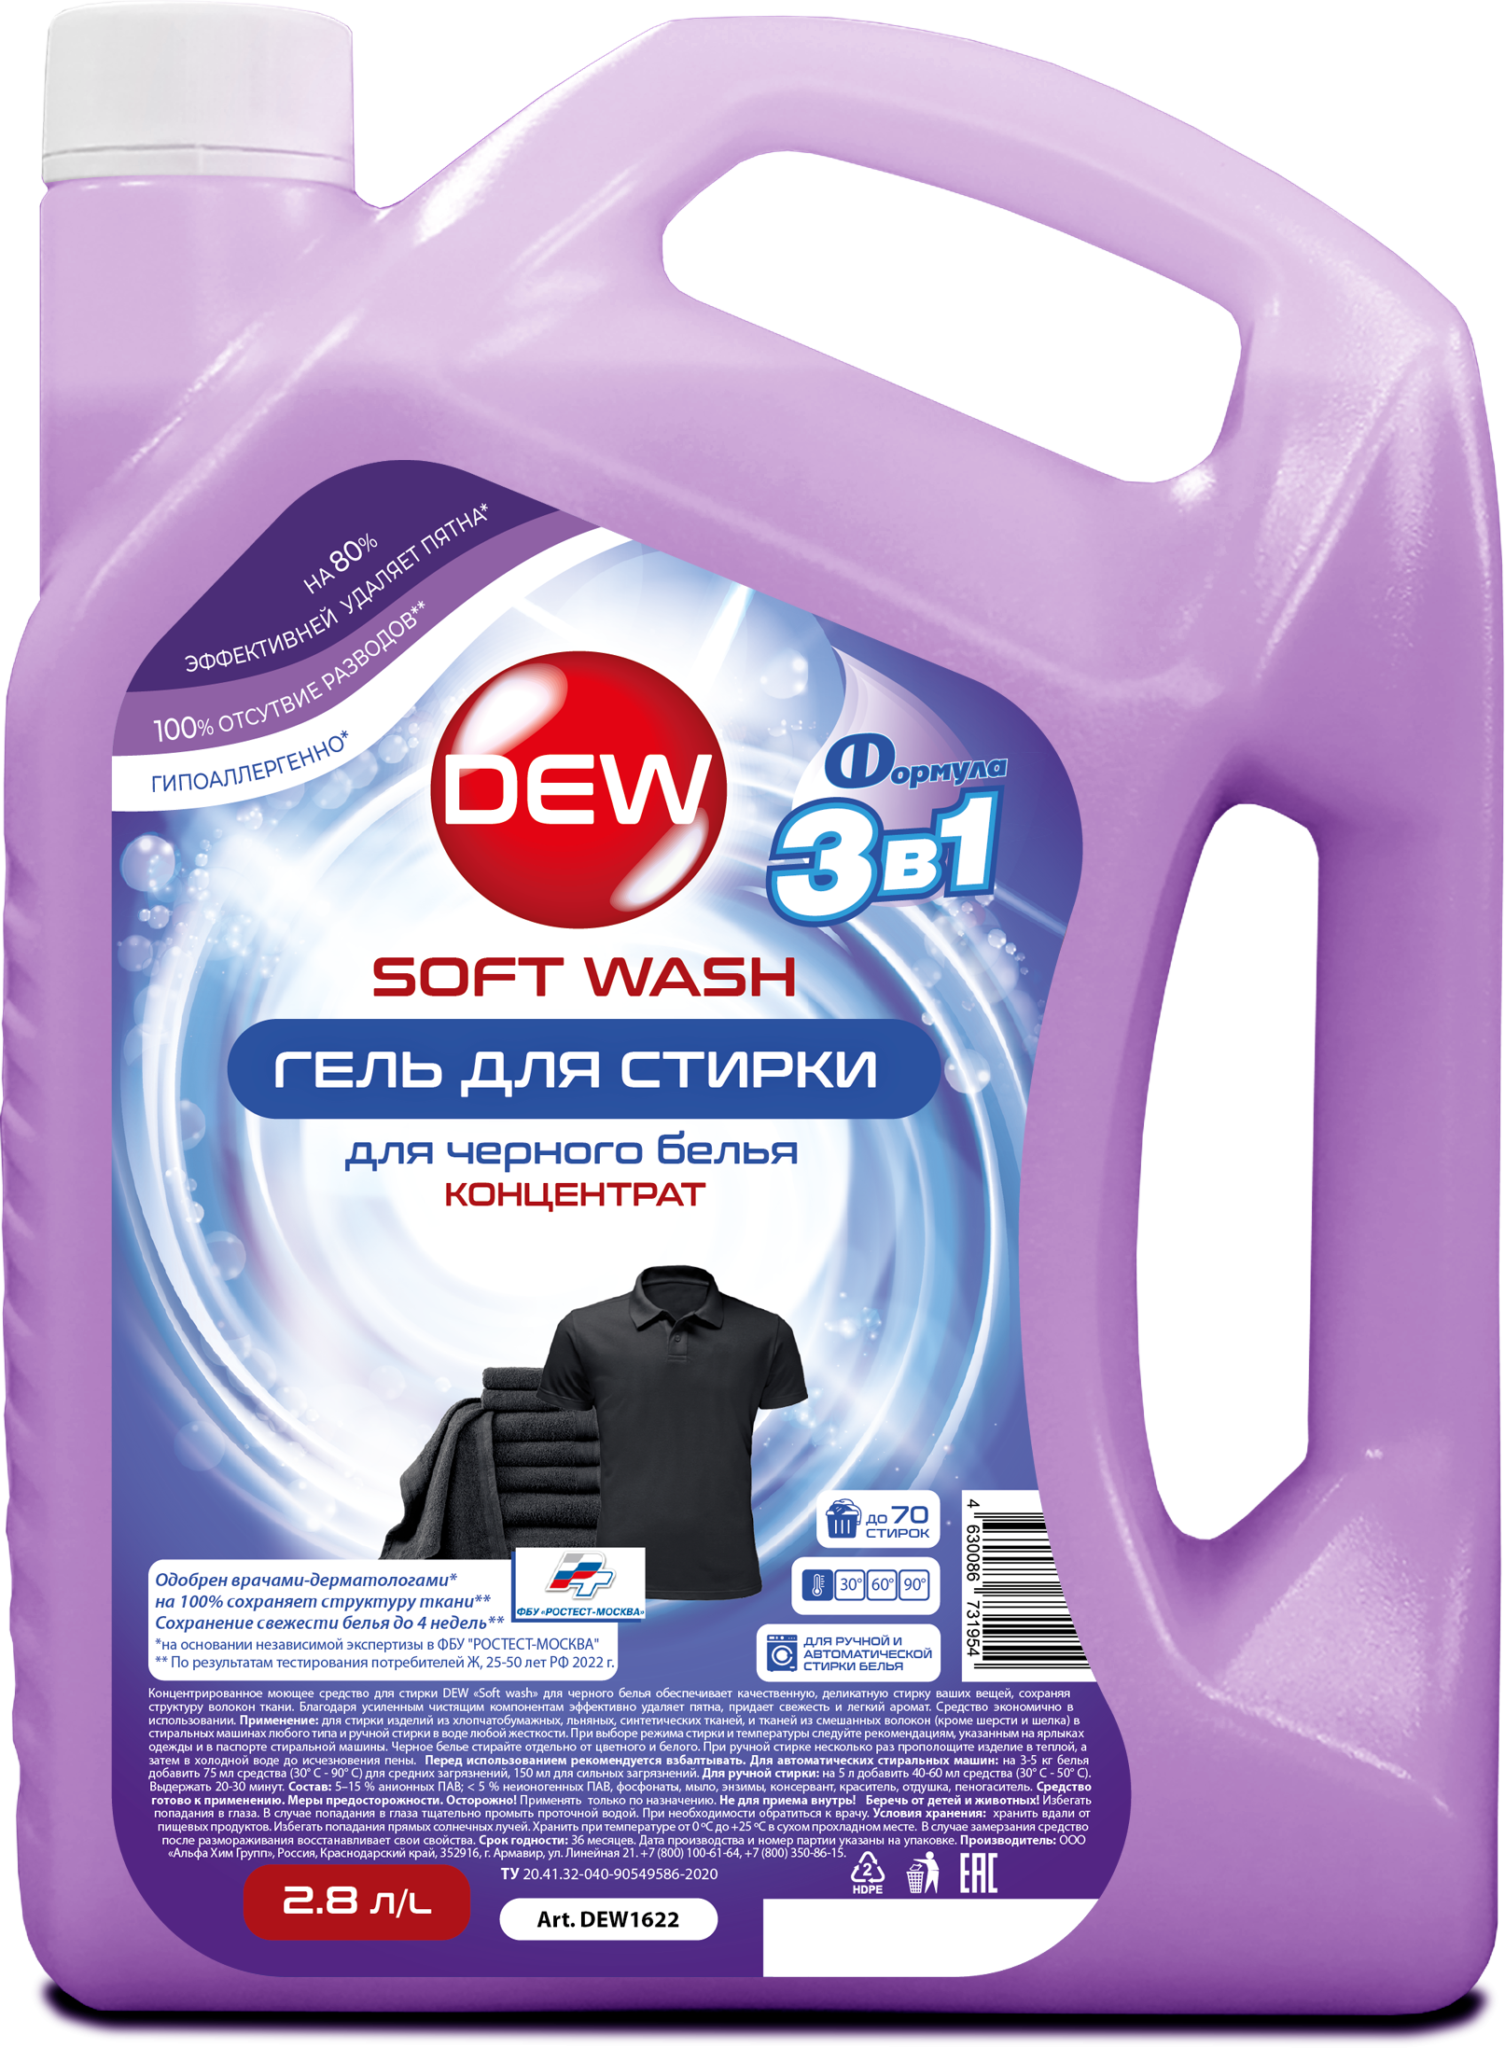 Ar45 soft wash